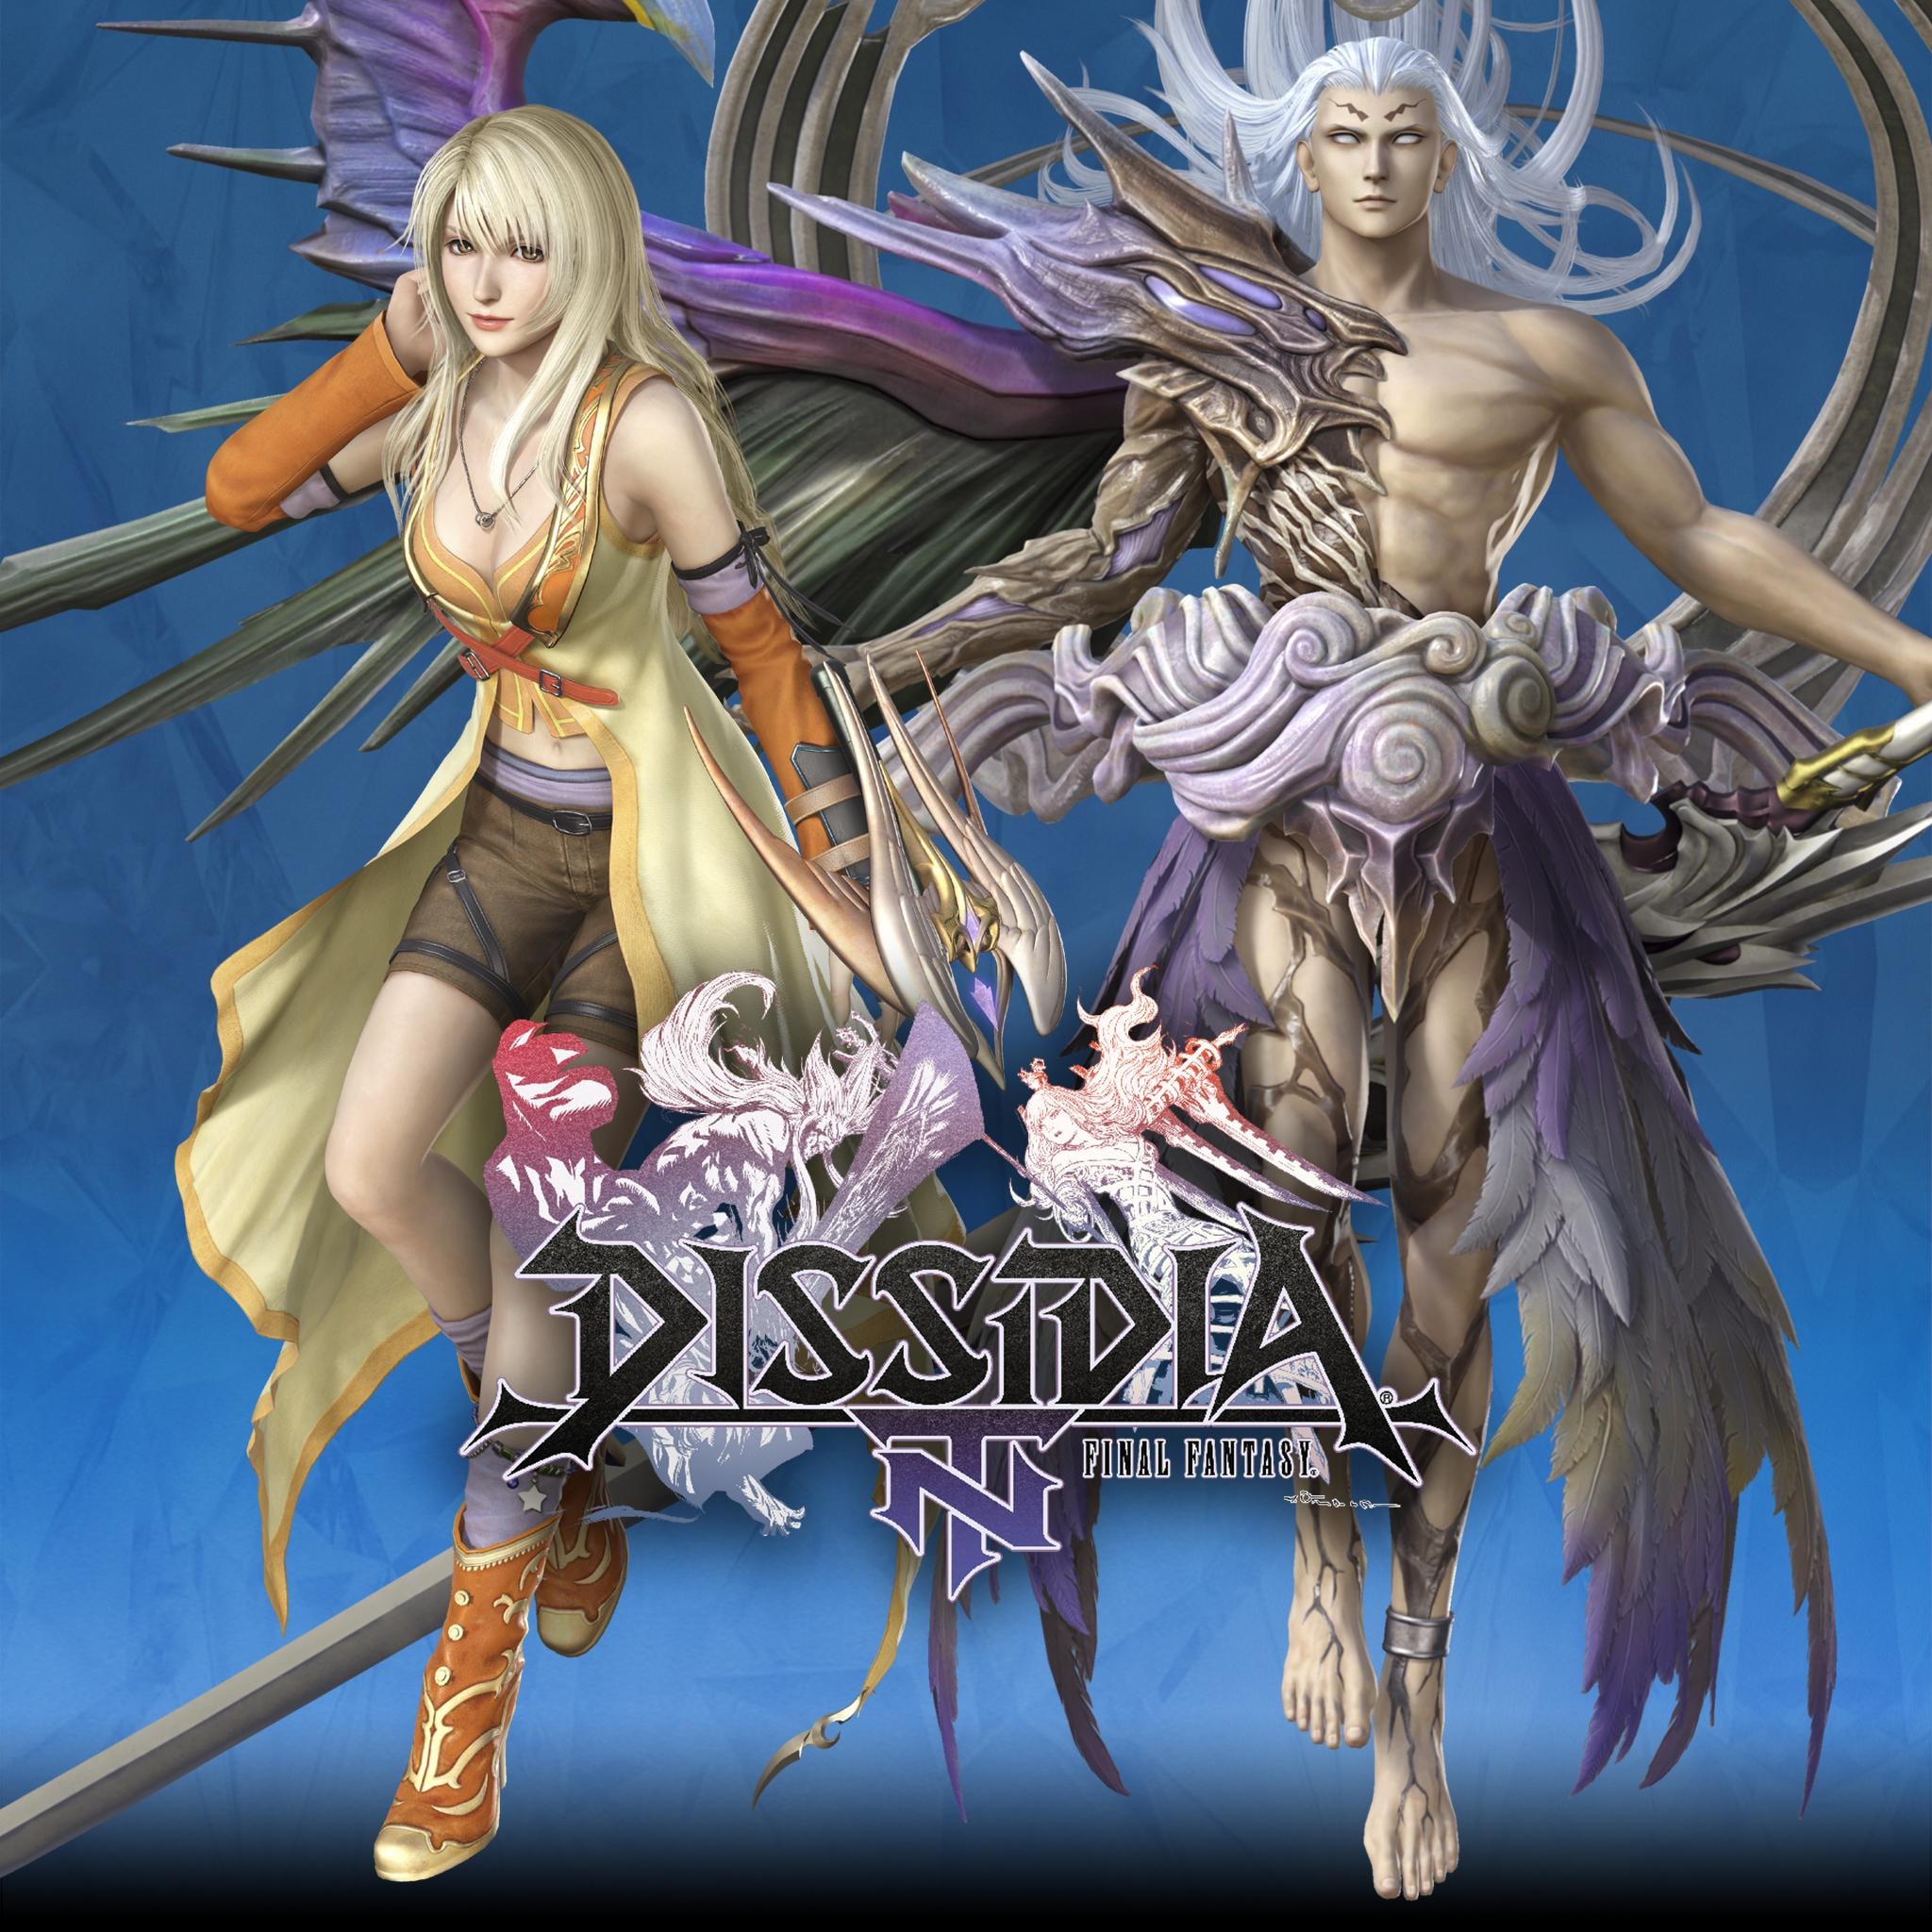 3e speciale uiterlijkset voor Sephiroth en Rinoa Heartilly